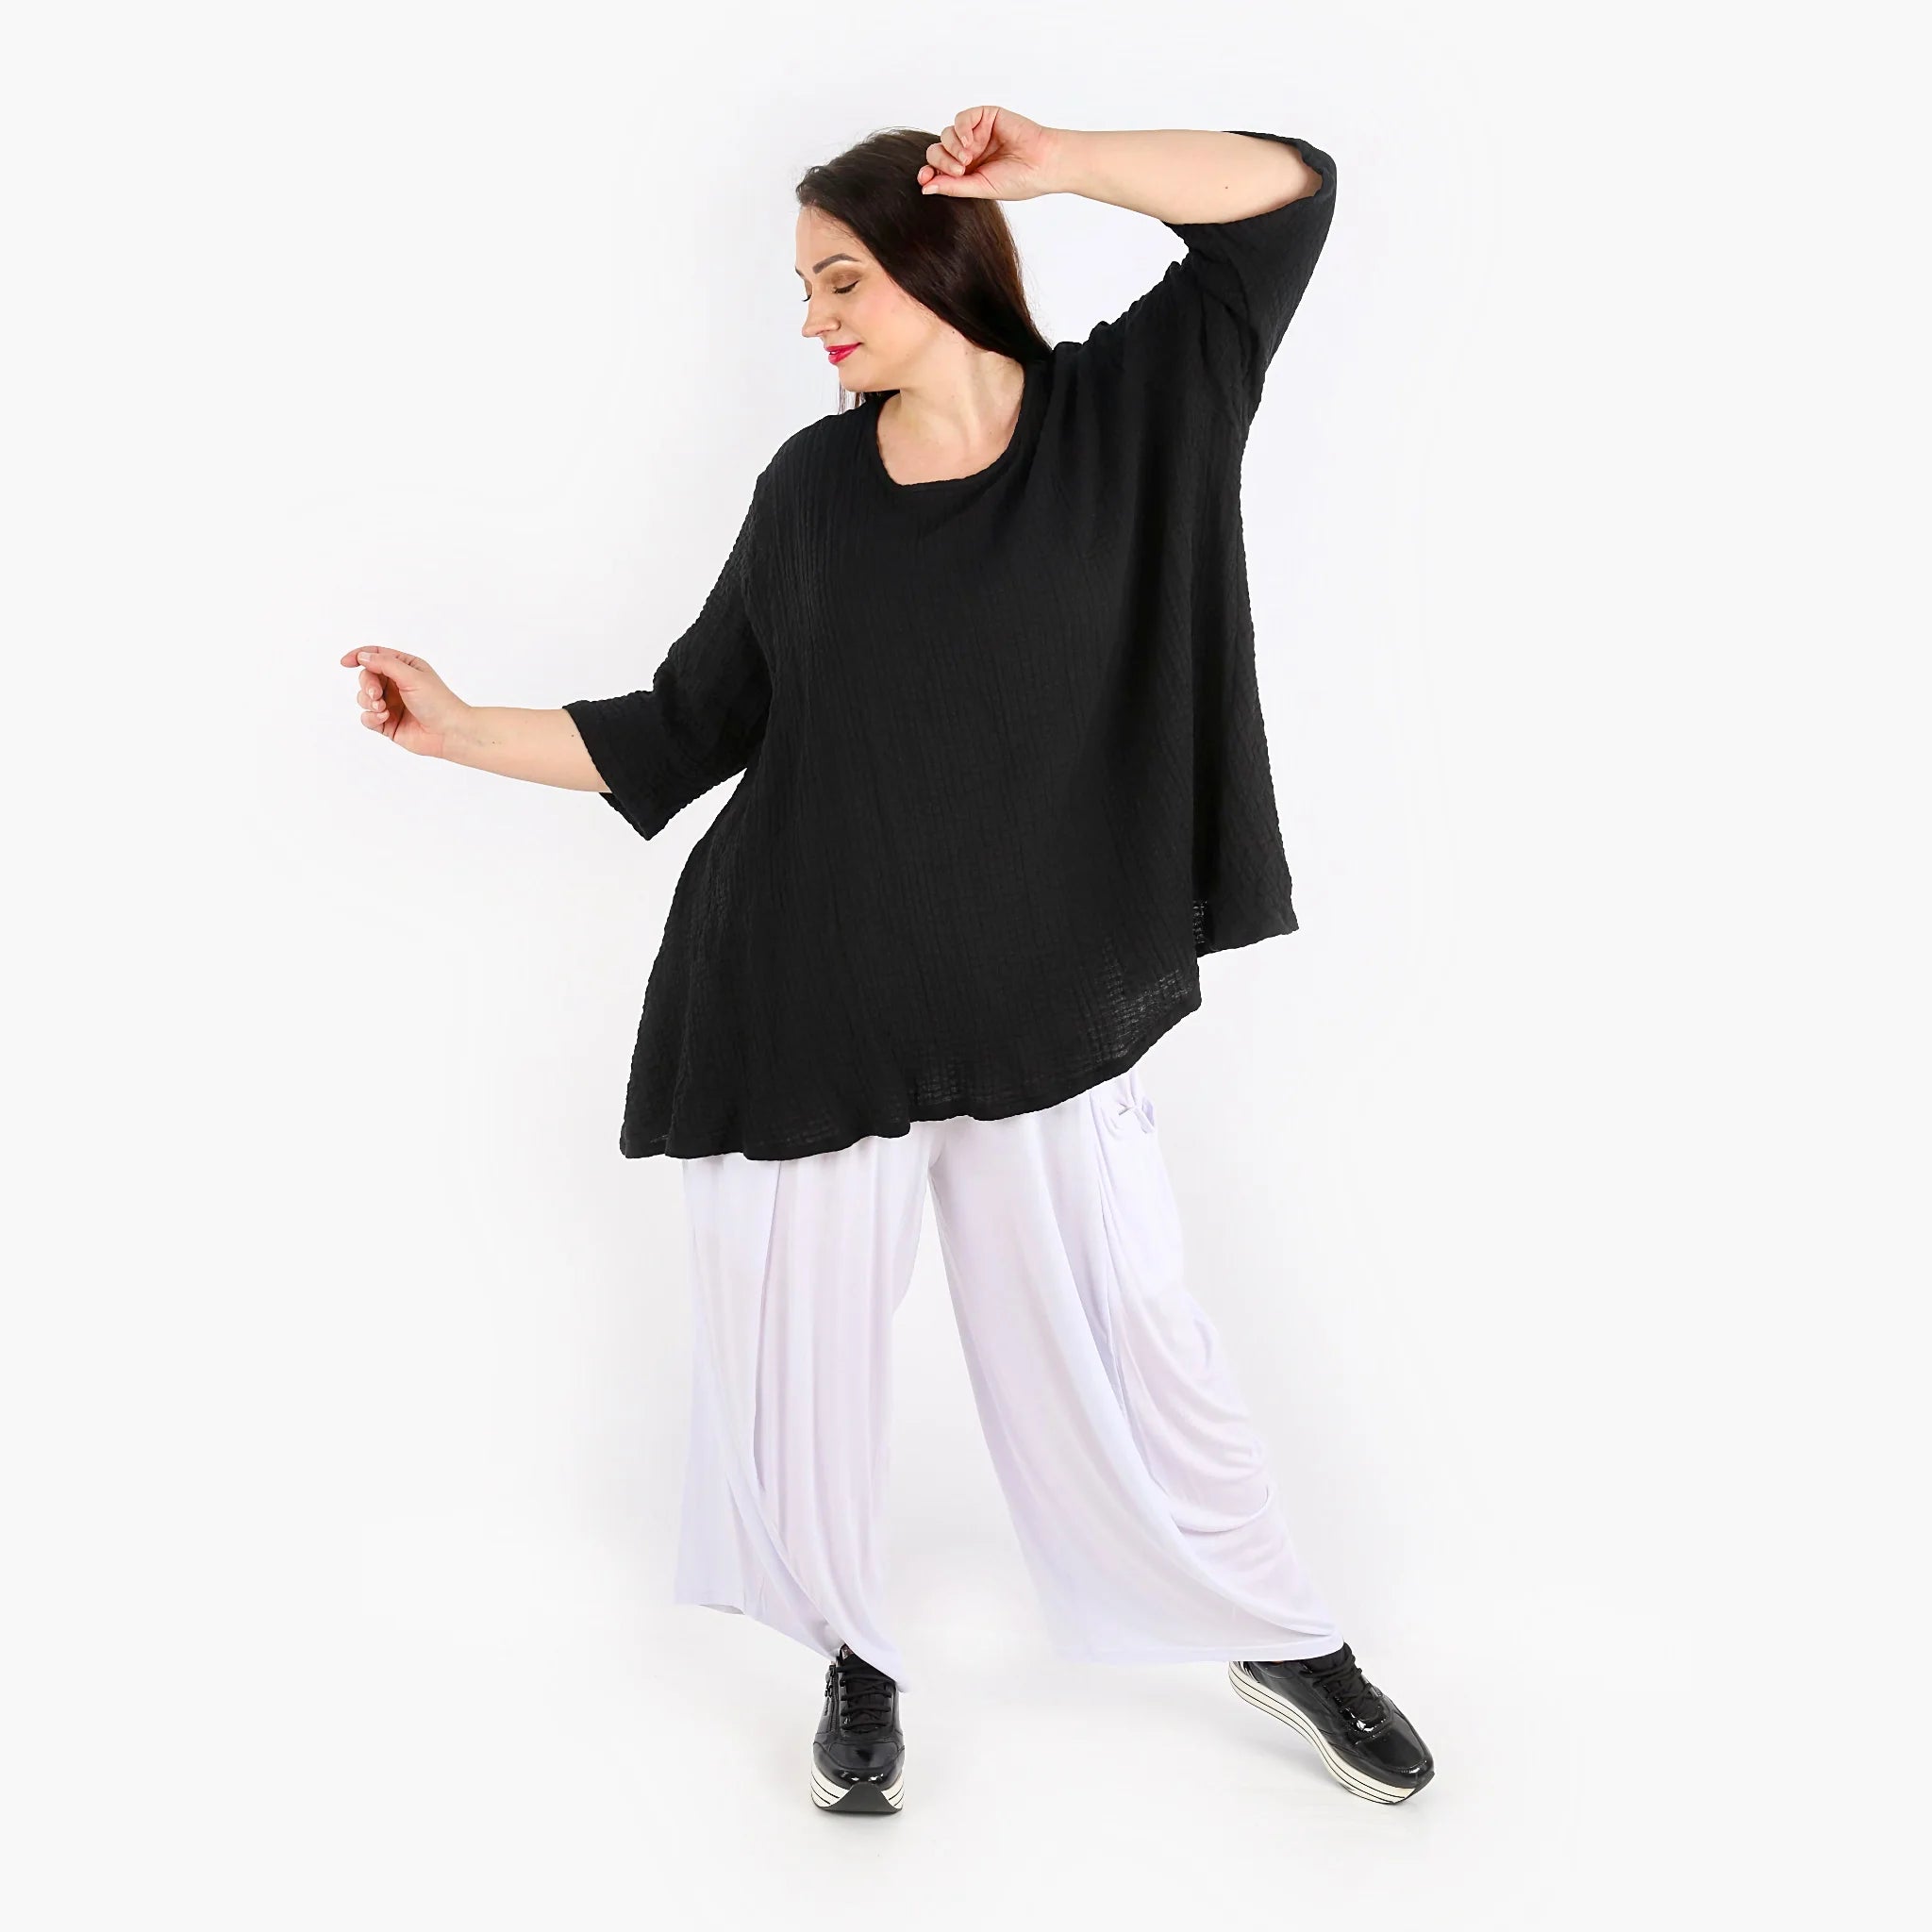 A-Form Bigshirt von AKH Fashion aus Baumwolle, 1310.00593, Schwarz, Unifarben, Ausgefallen